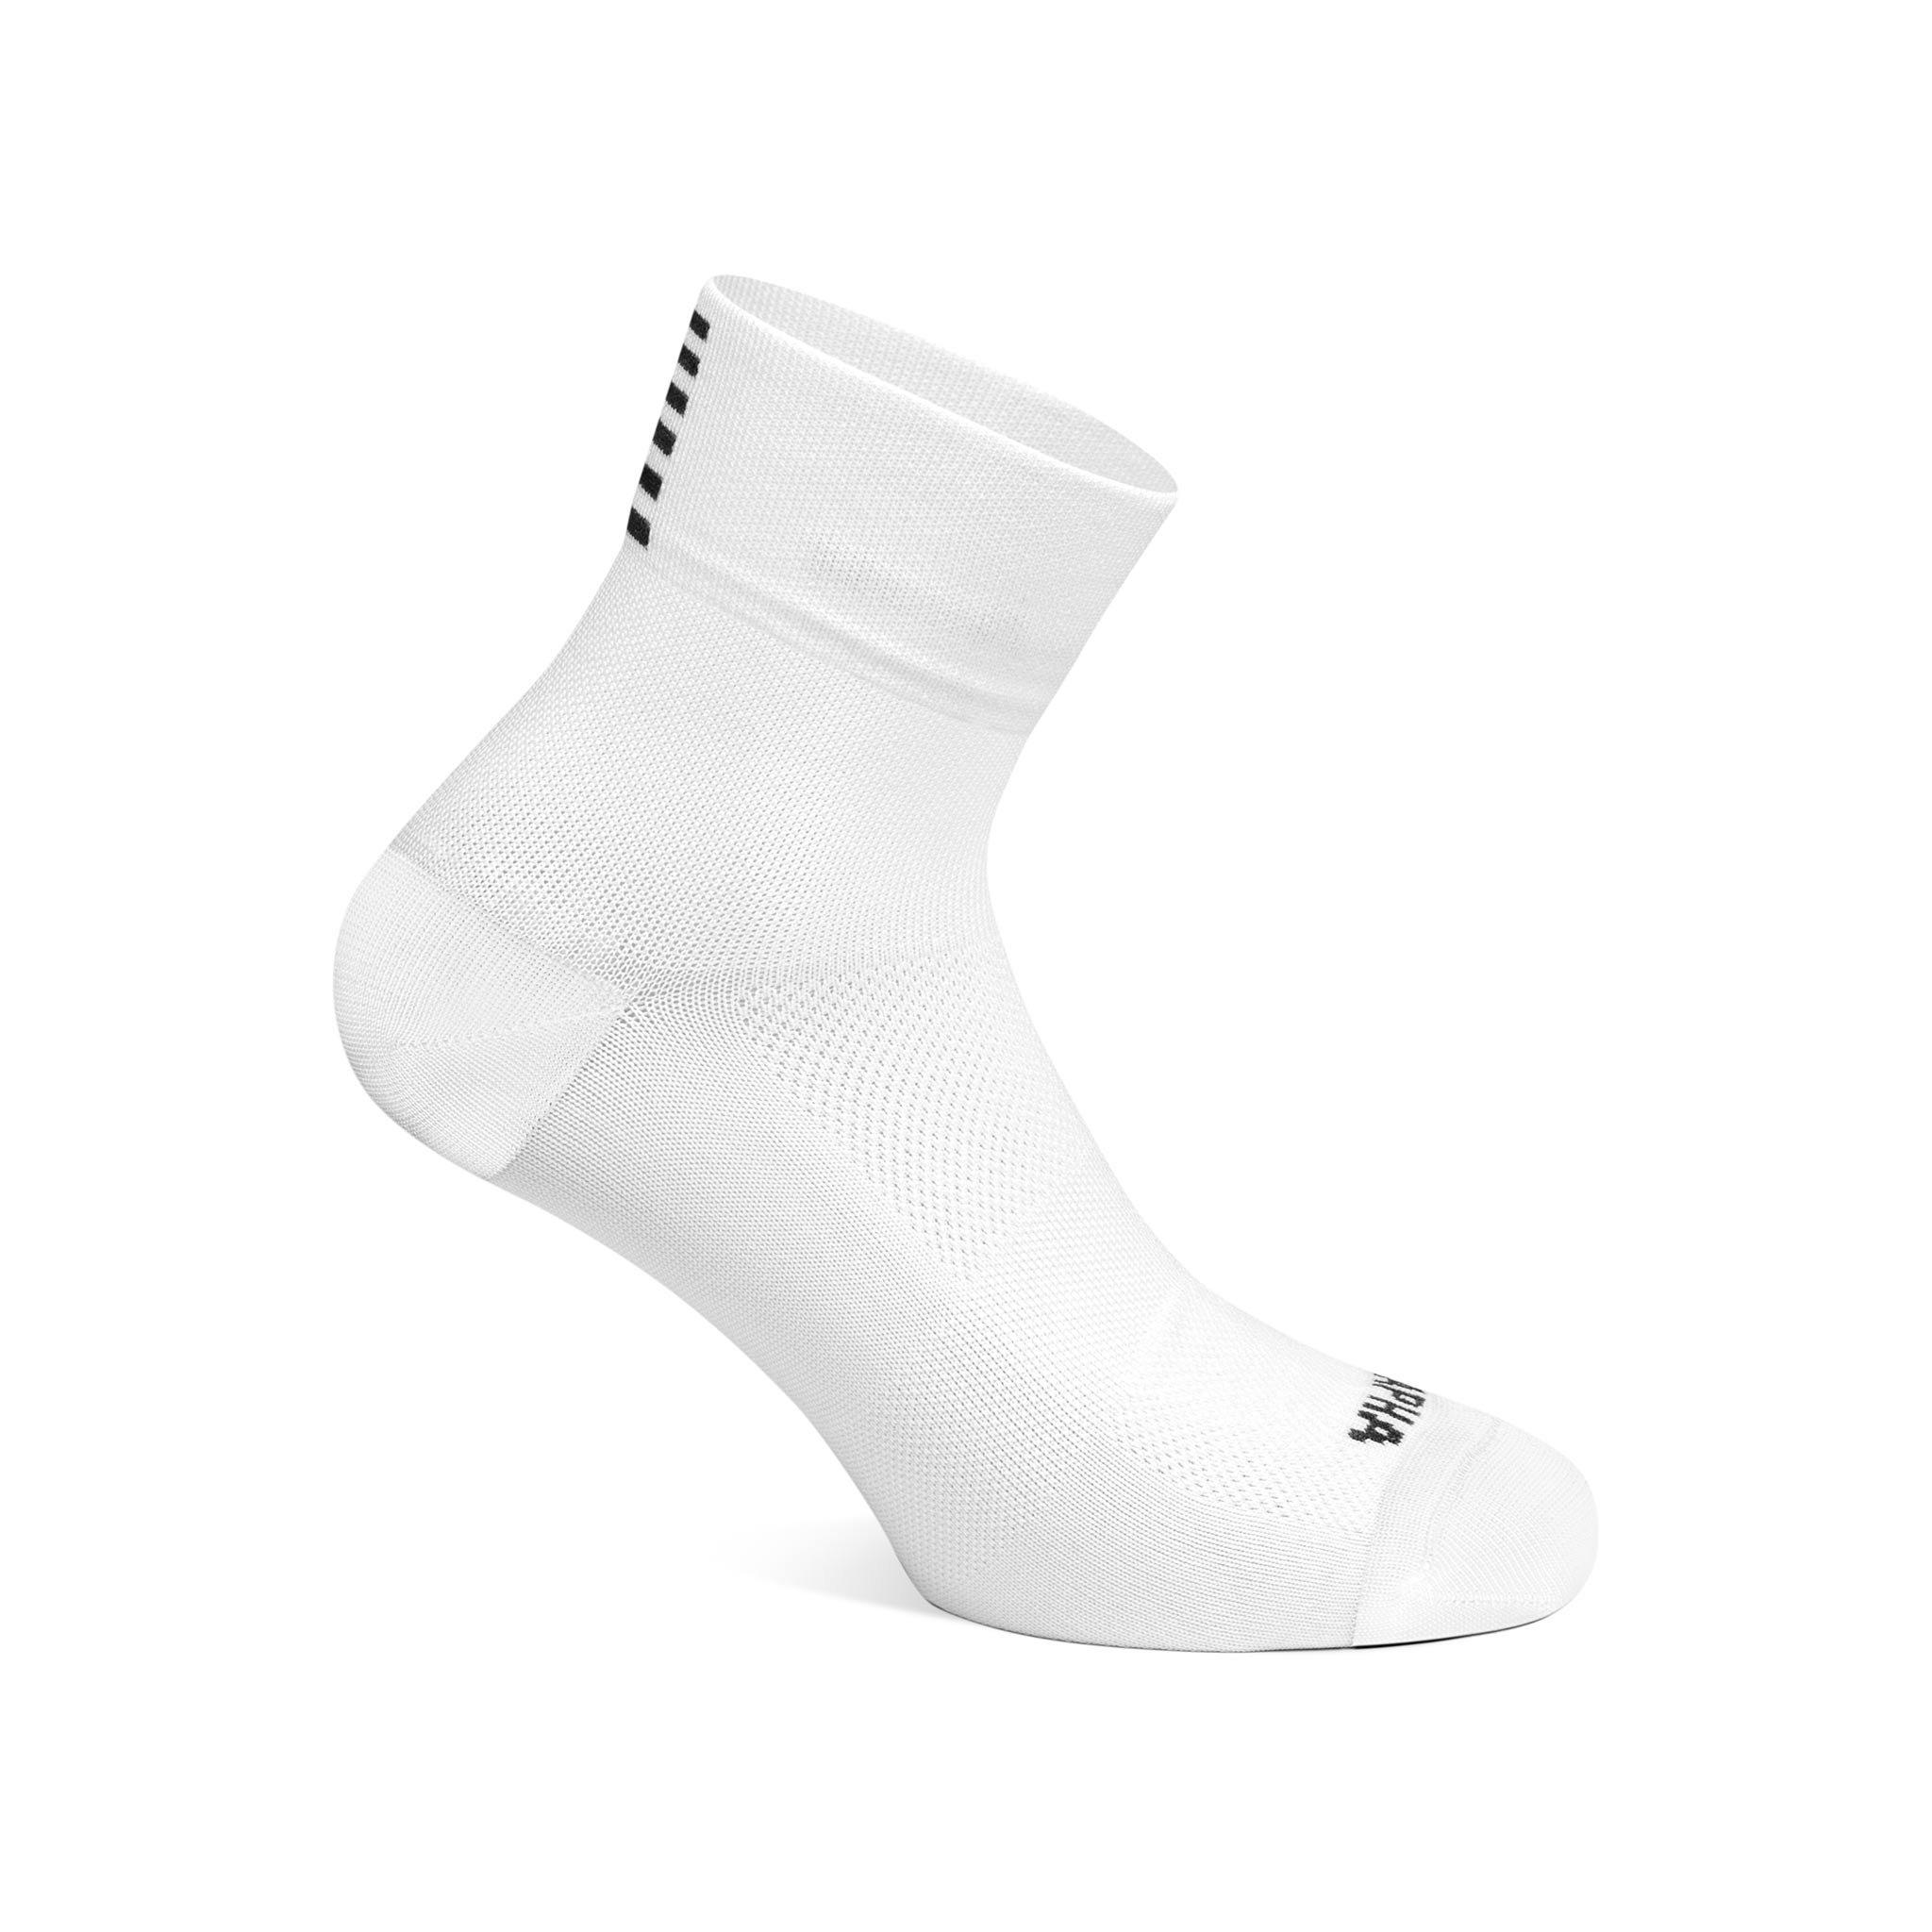 Men's Pro Team Socks - Short  Rapha Race Fit Socks For Fair